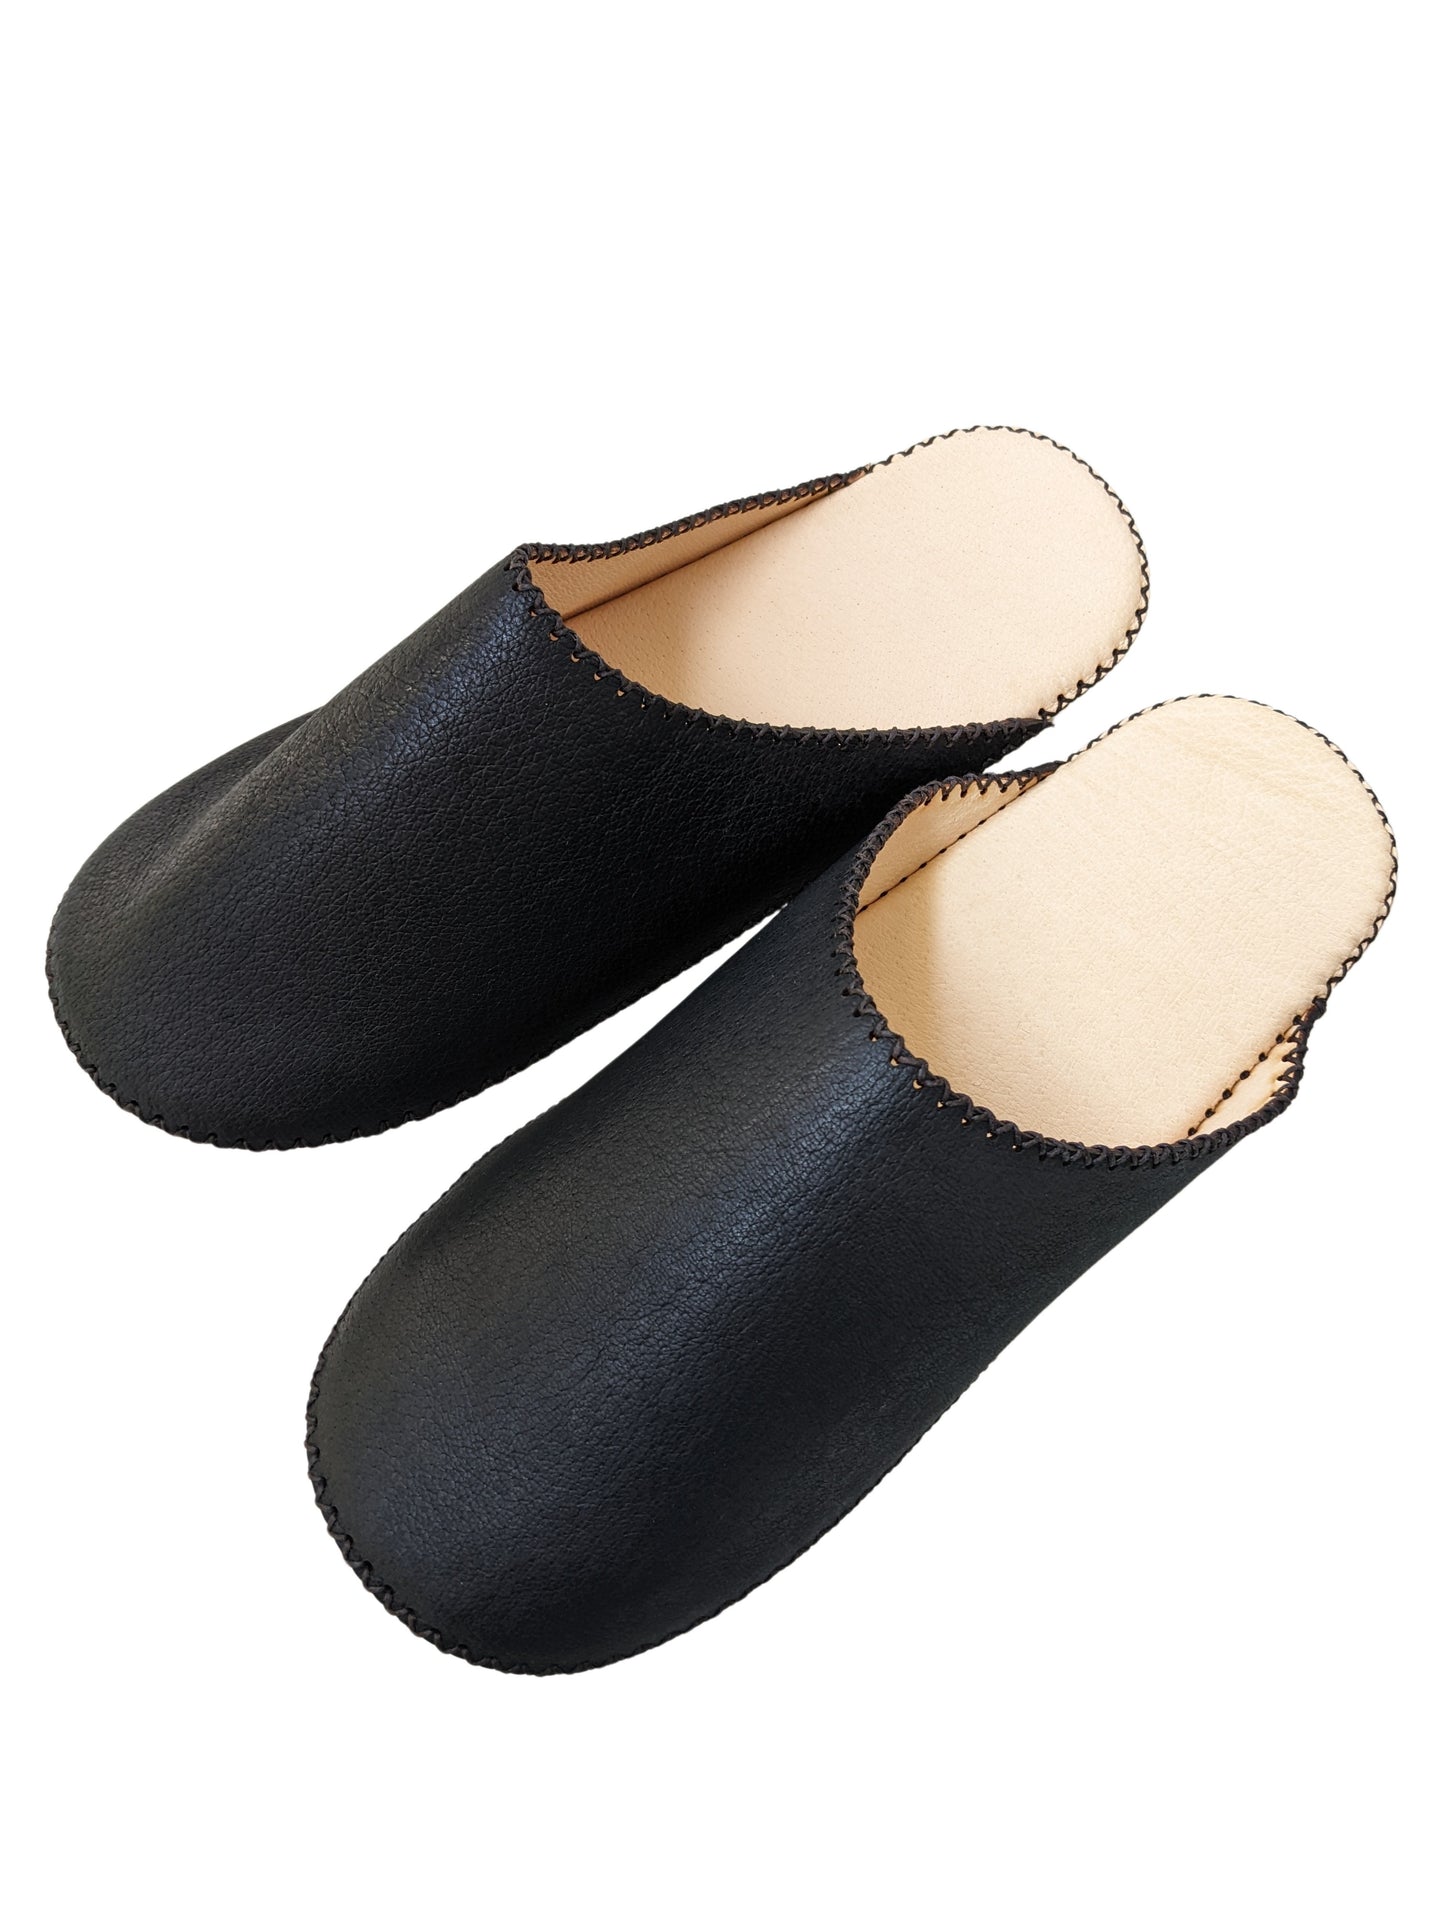 Tokyo Leather Heiwa Slippers [Black]